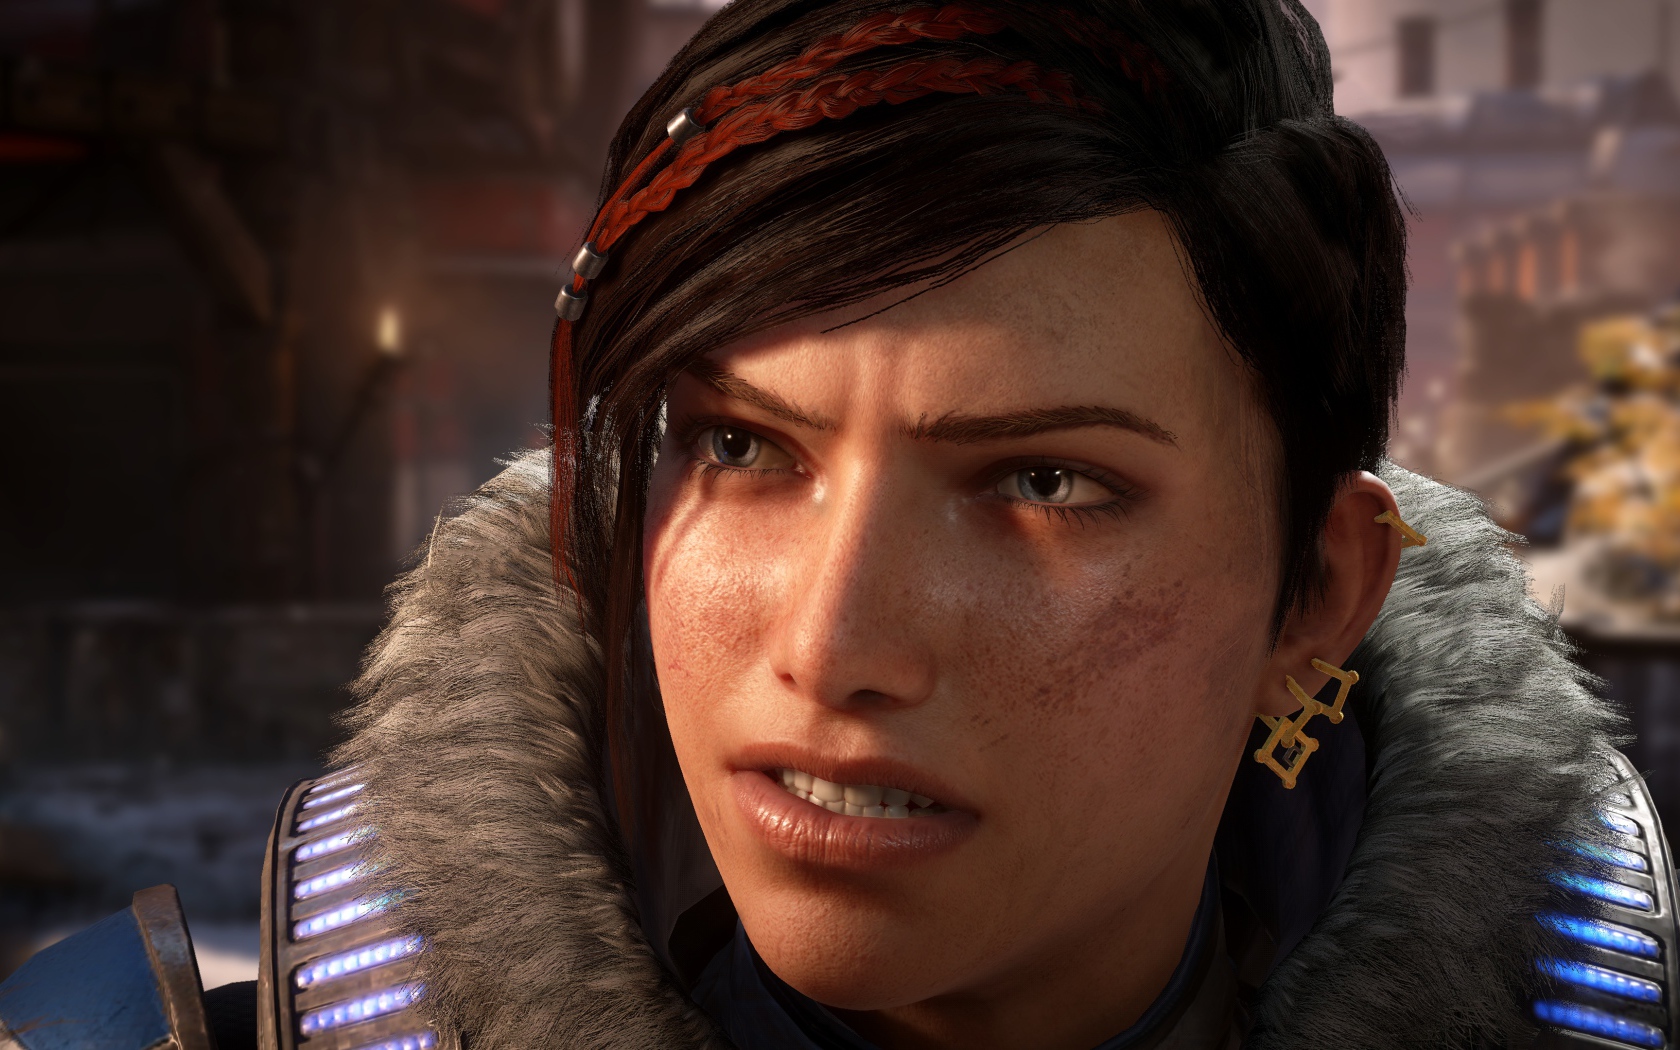 Кейт персонаж новой видеоигры Gears 5, 2019 года